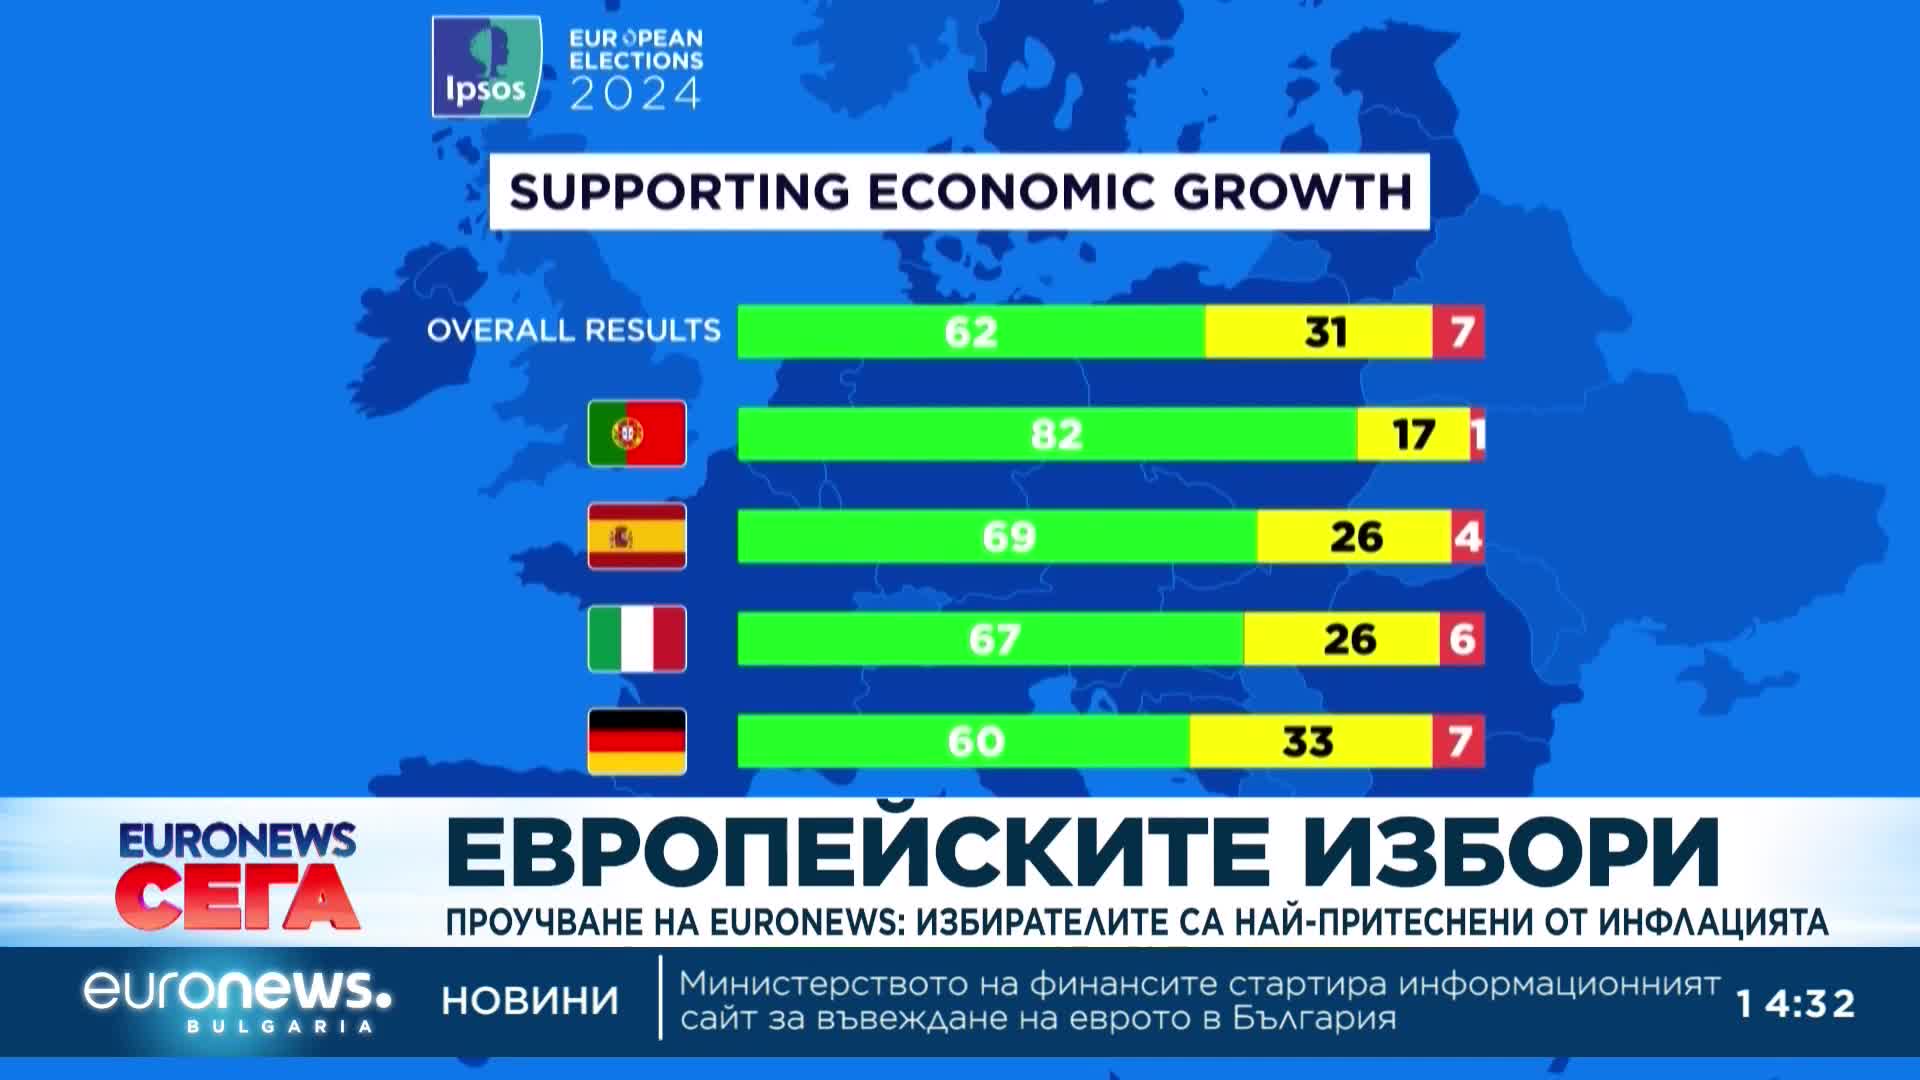 Проучване на Euronews: Избирателите са най-притеснени от инфлацията 